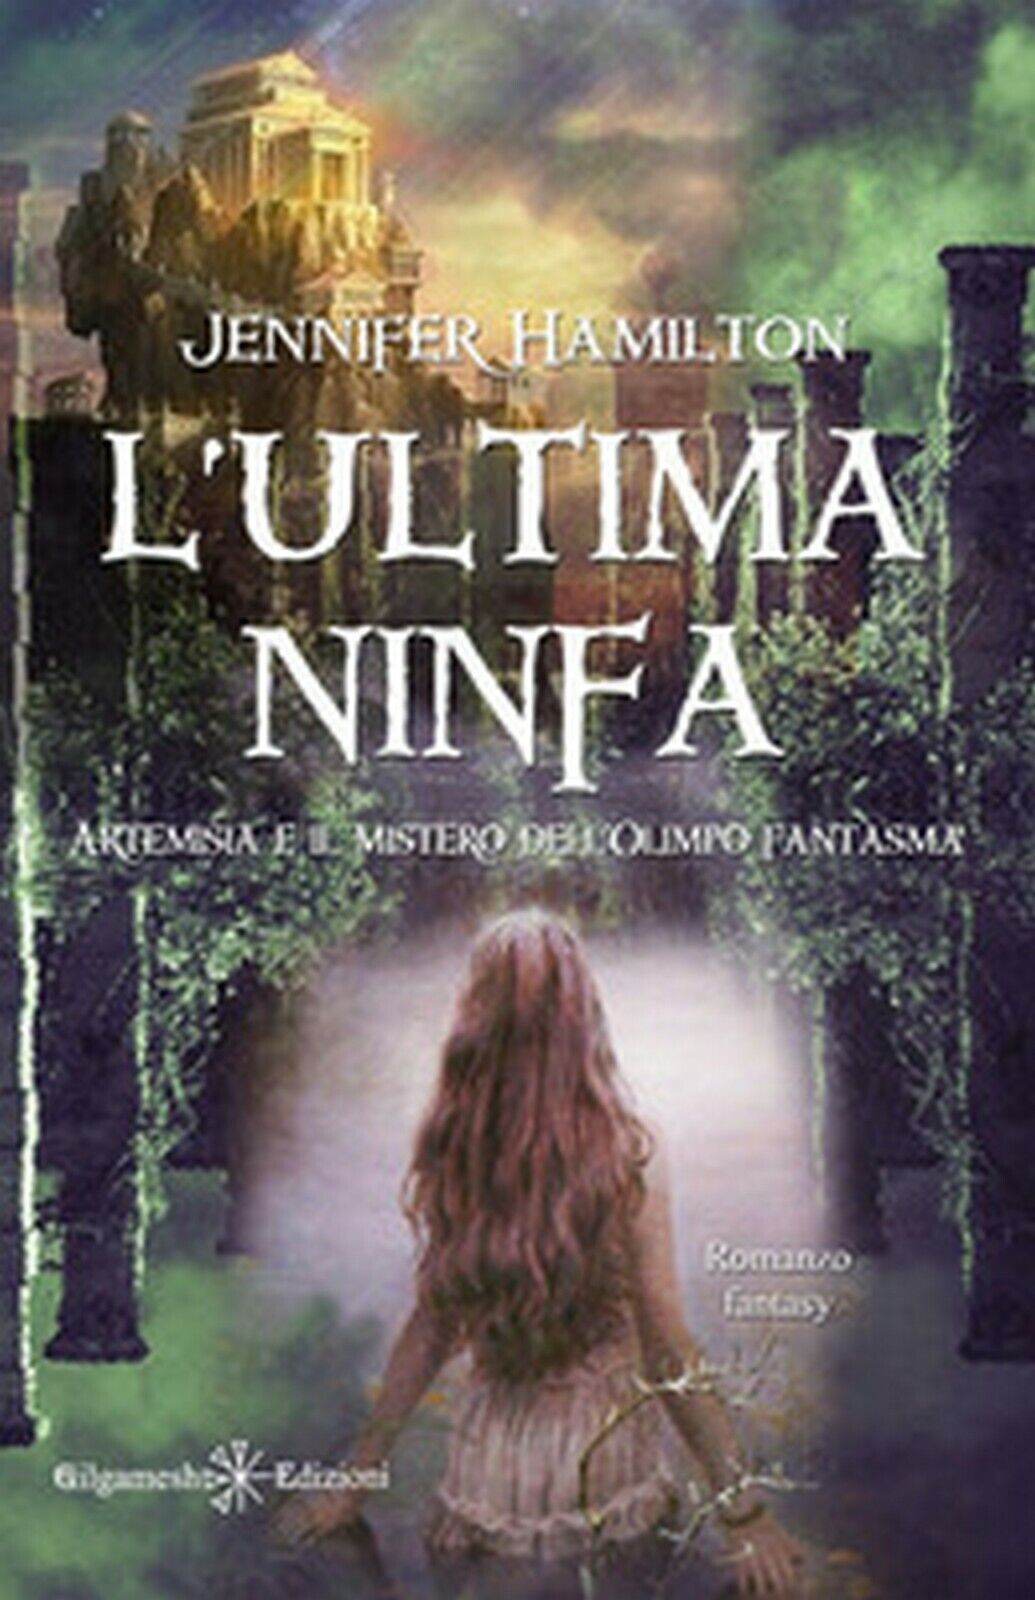 L'ultima ninfa. Artemisia e il mistero delL'Olimpo fantasma, Jennifer Hamilton libro usato